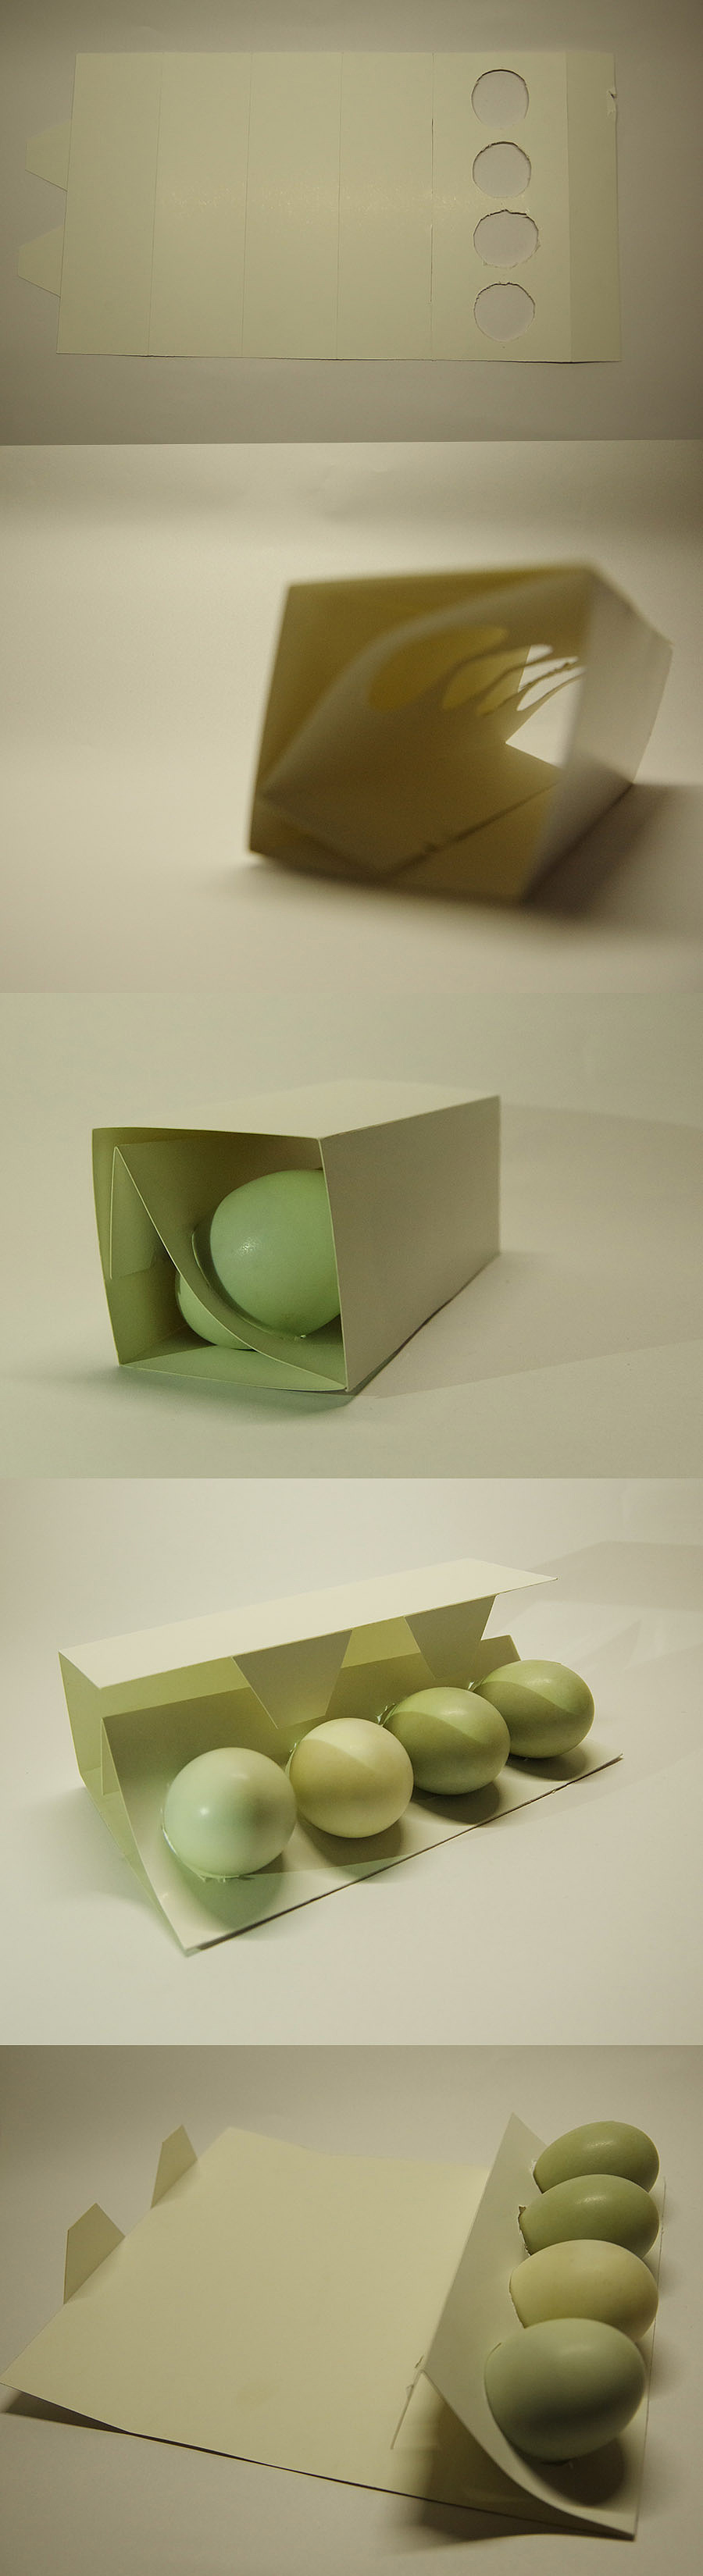 在包装设计课上,又对鸡蛋包装的结构进行了一次探索,做了以下五种